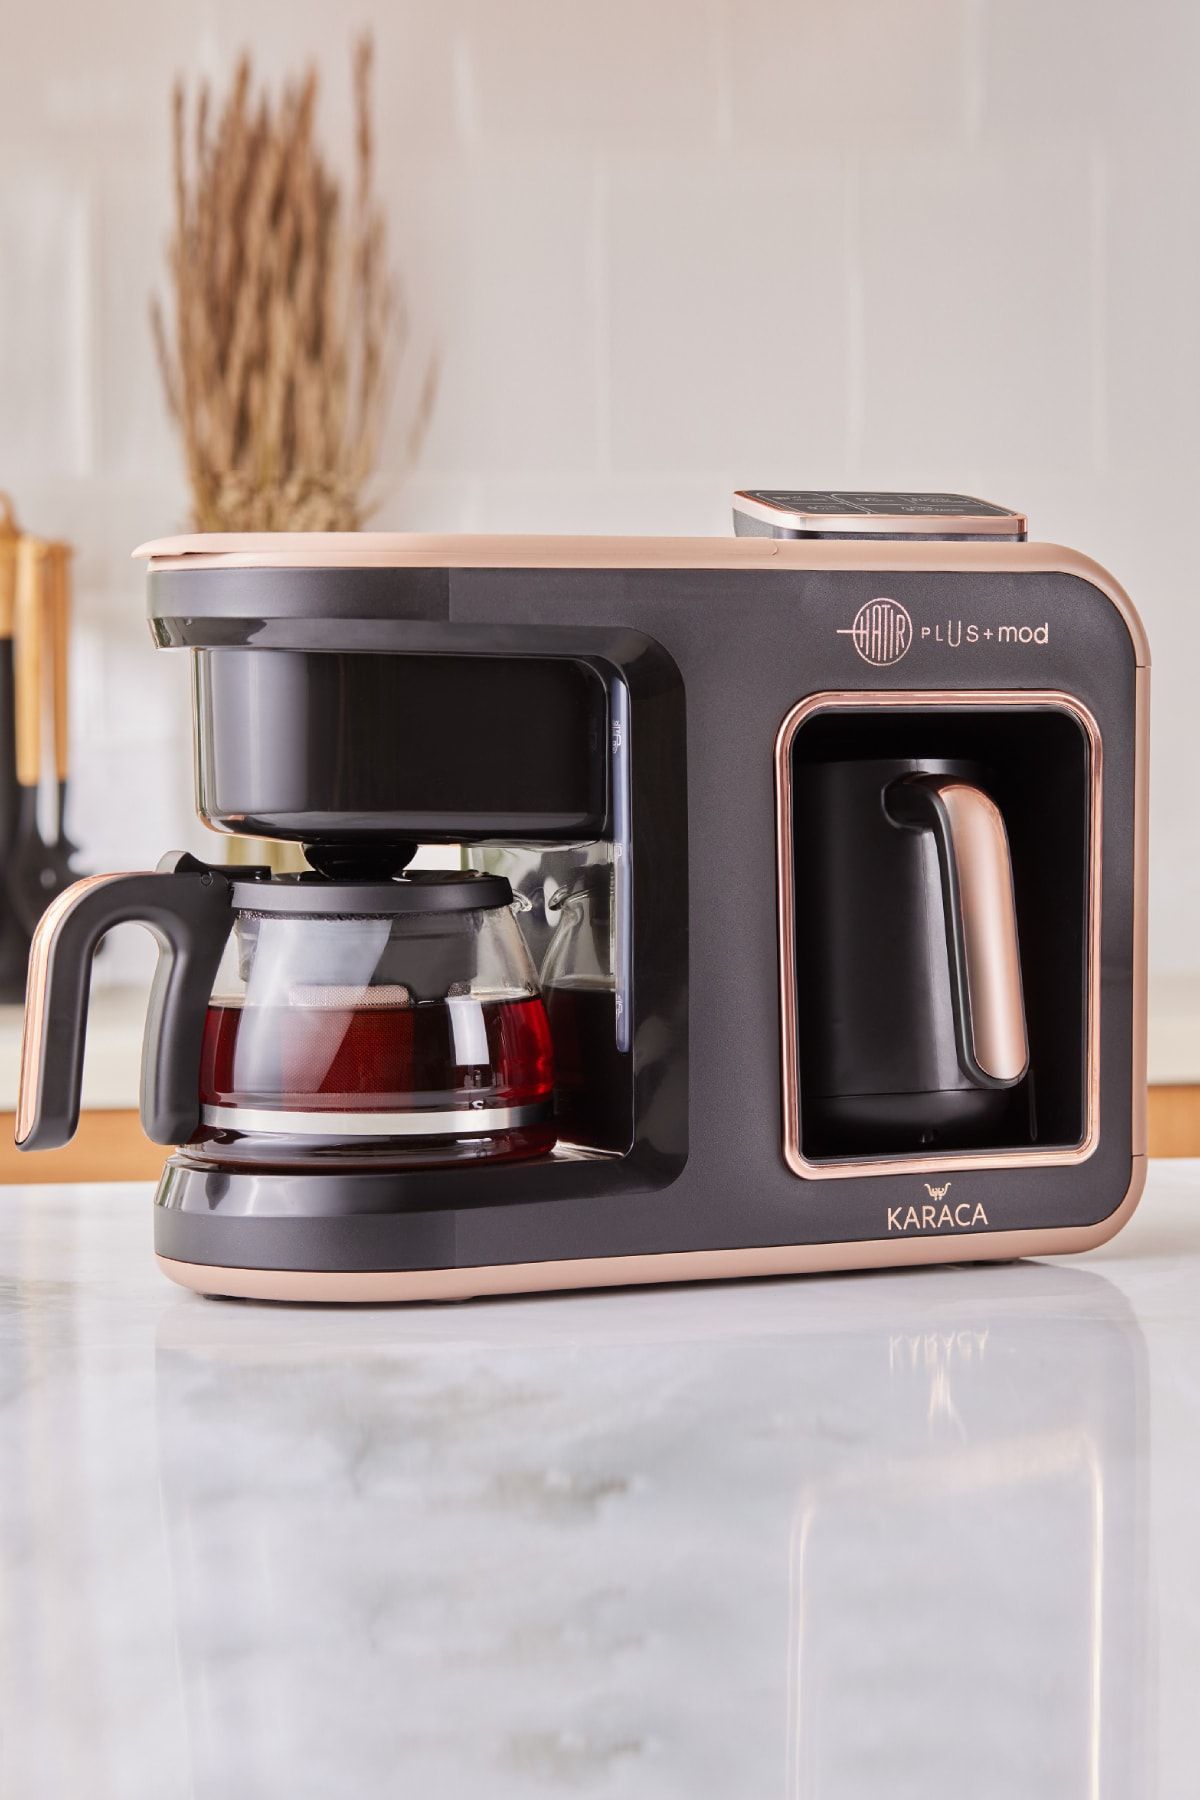 Karaca Hatır Plus Mod 5 In 1 Konuşan Kahve Ve Çay Makinesi Rosie Brown